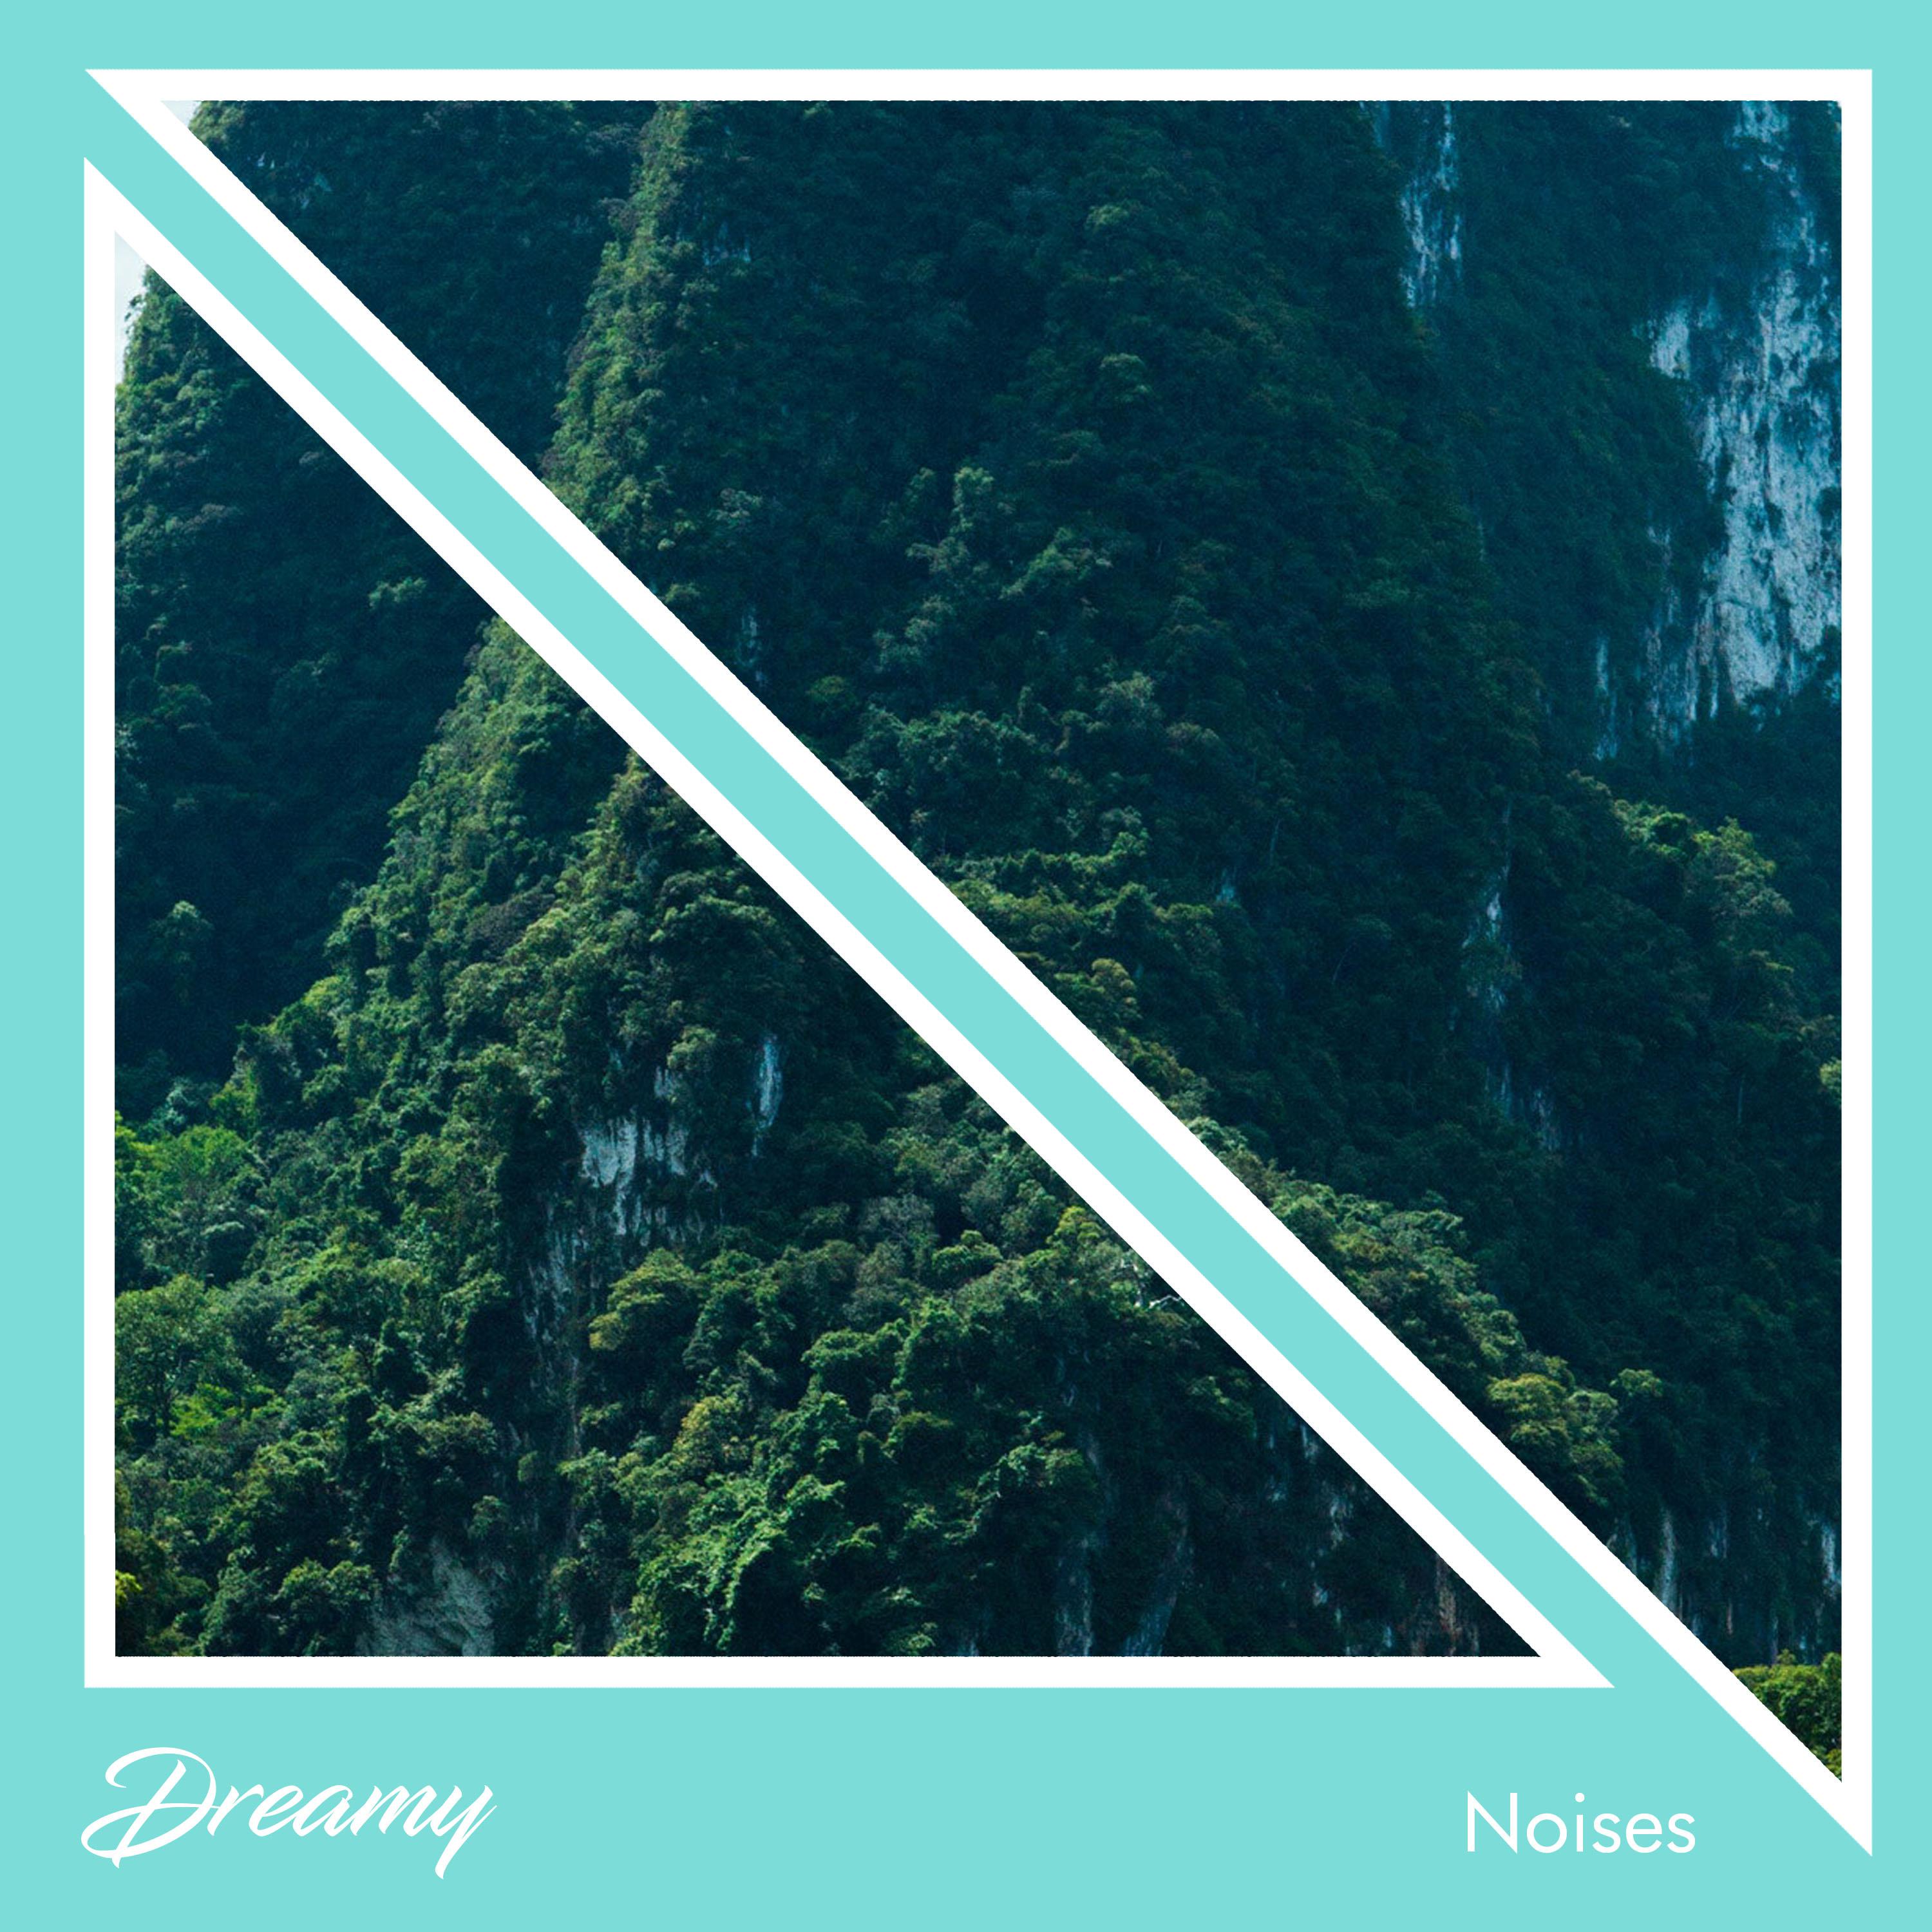 #15 Dreamy Noises for Sleep or Meditation